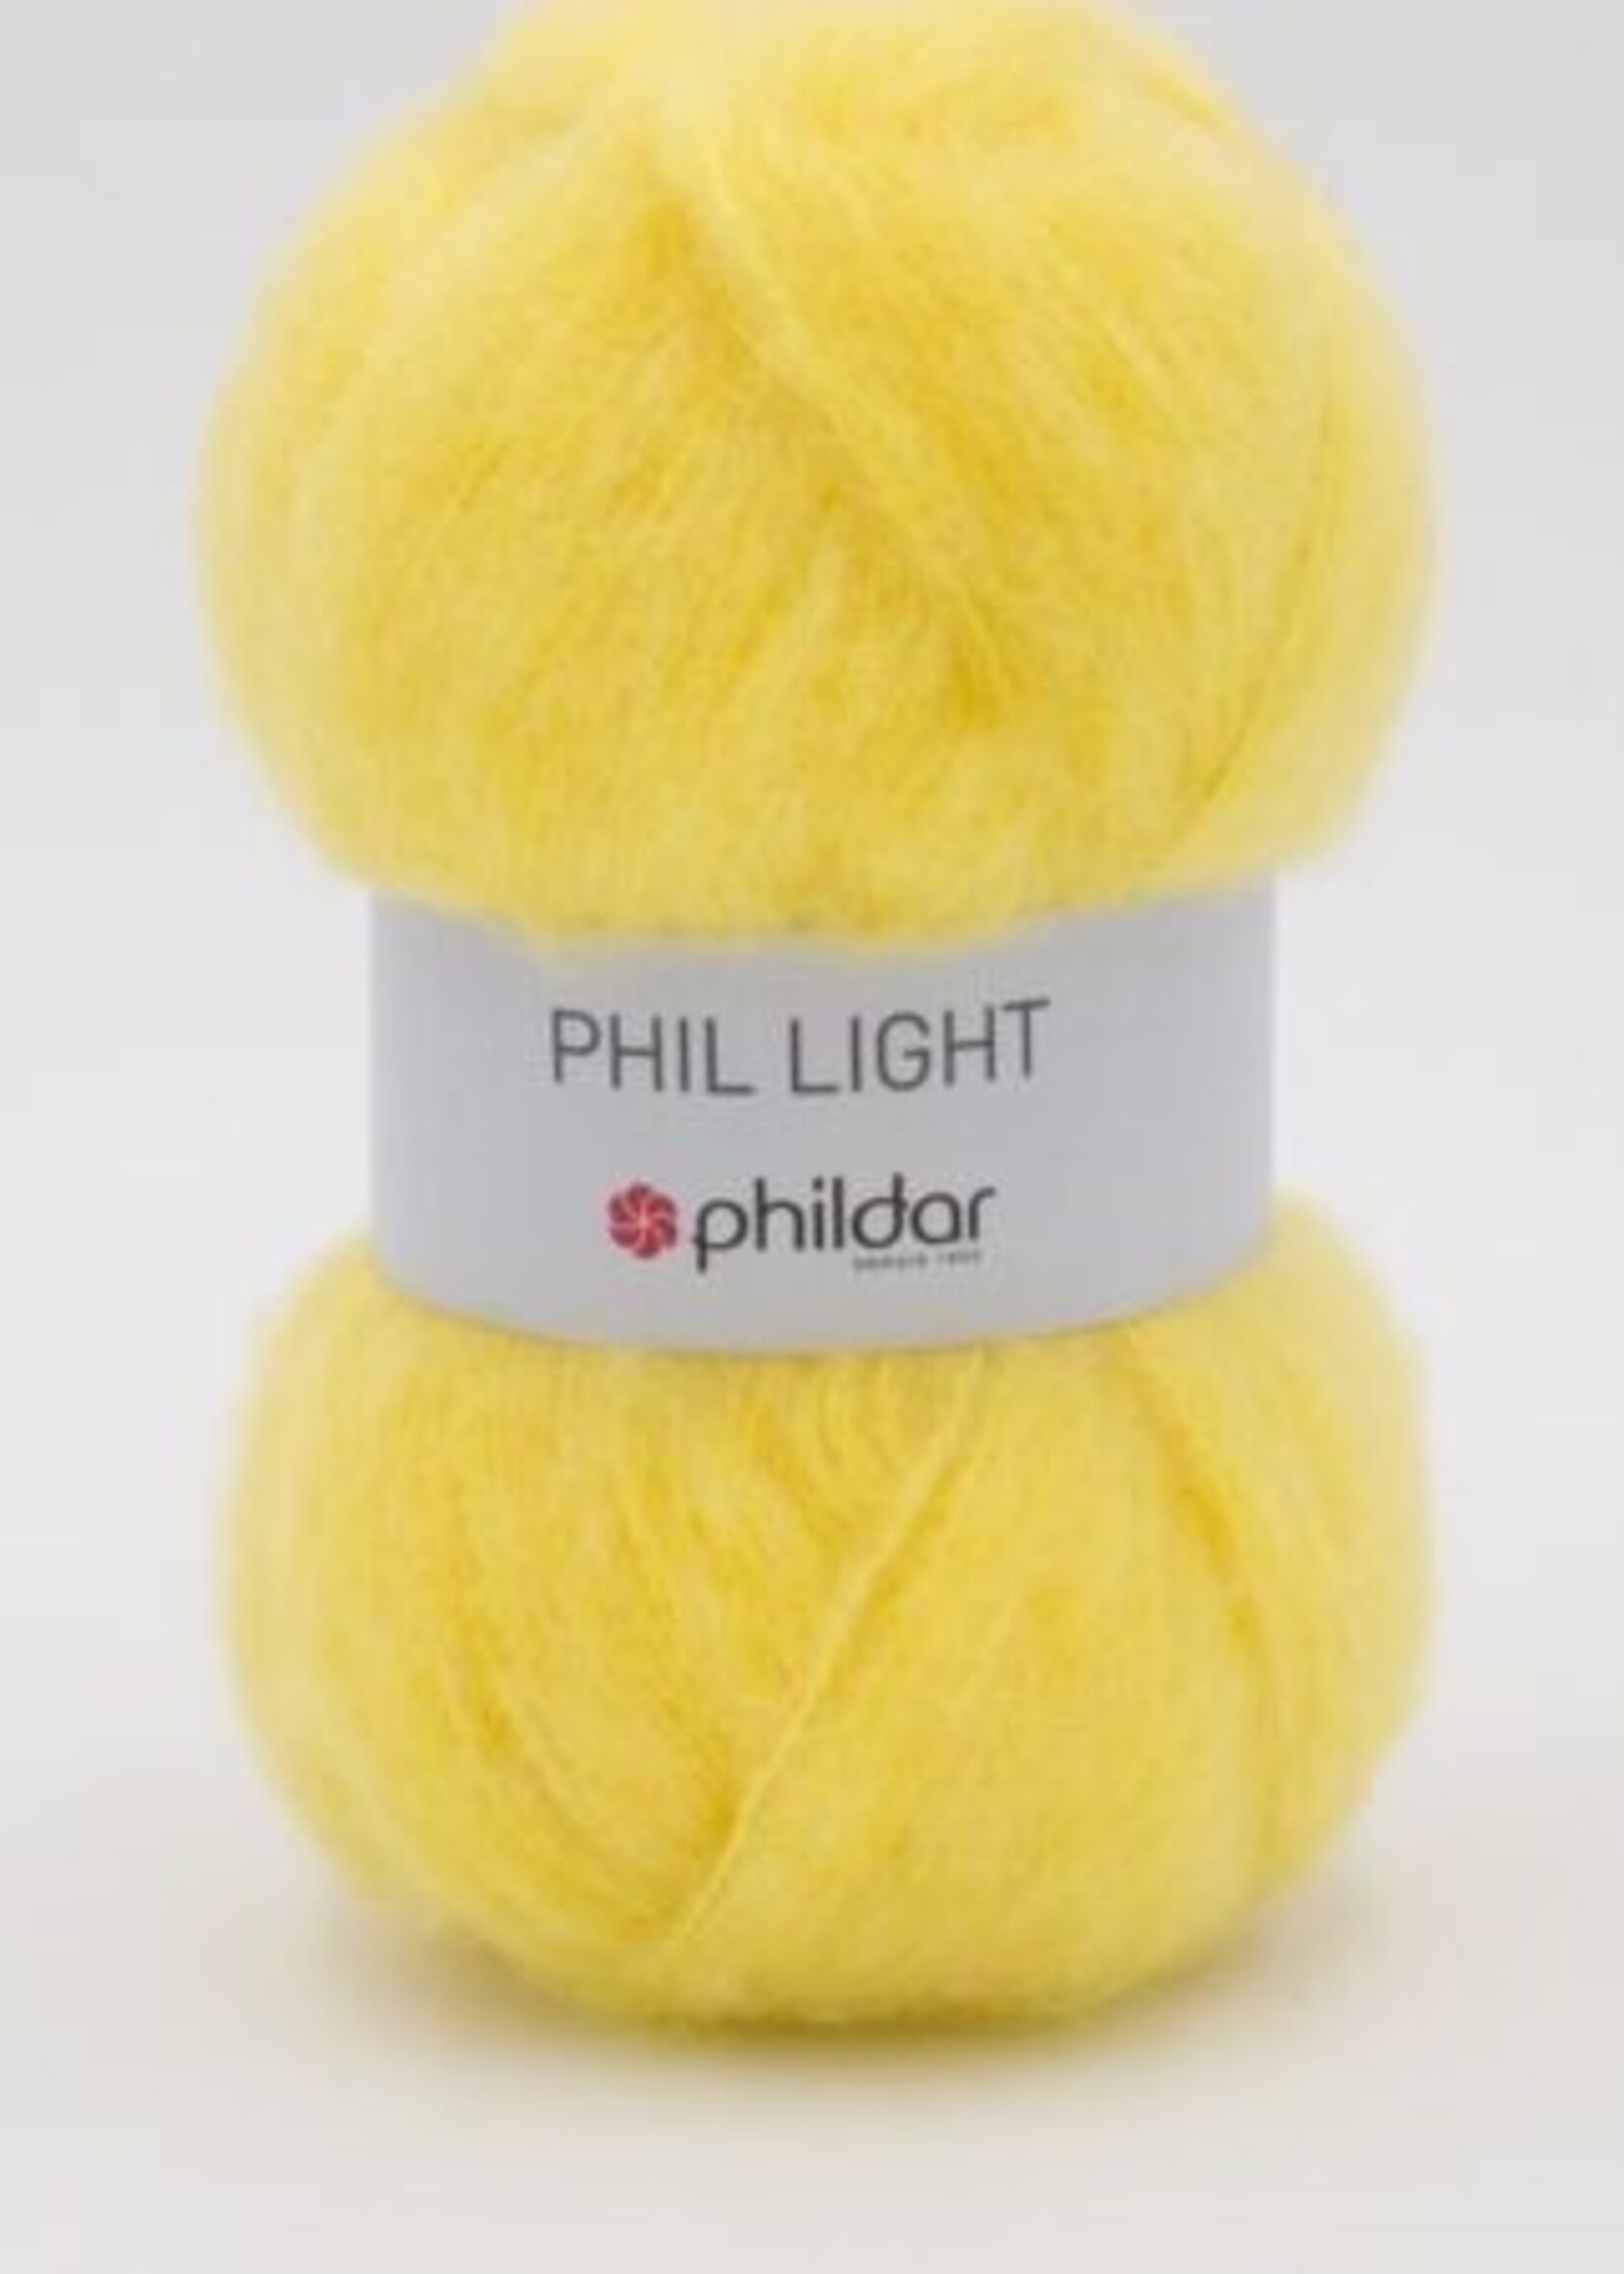 Phildar Phil Light -citrus